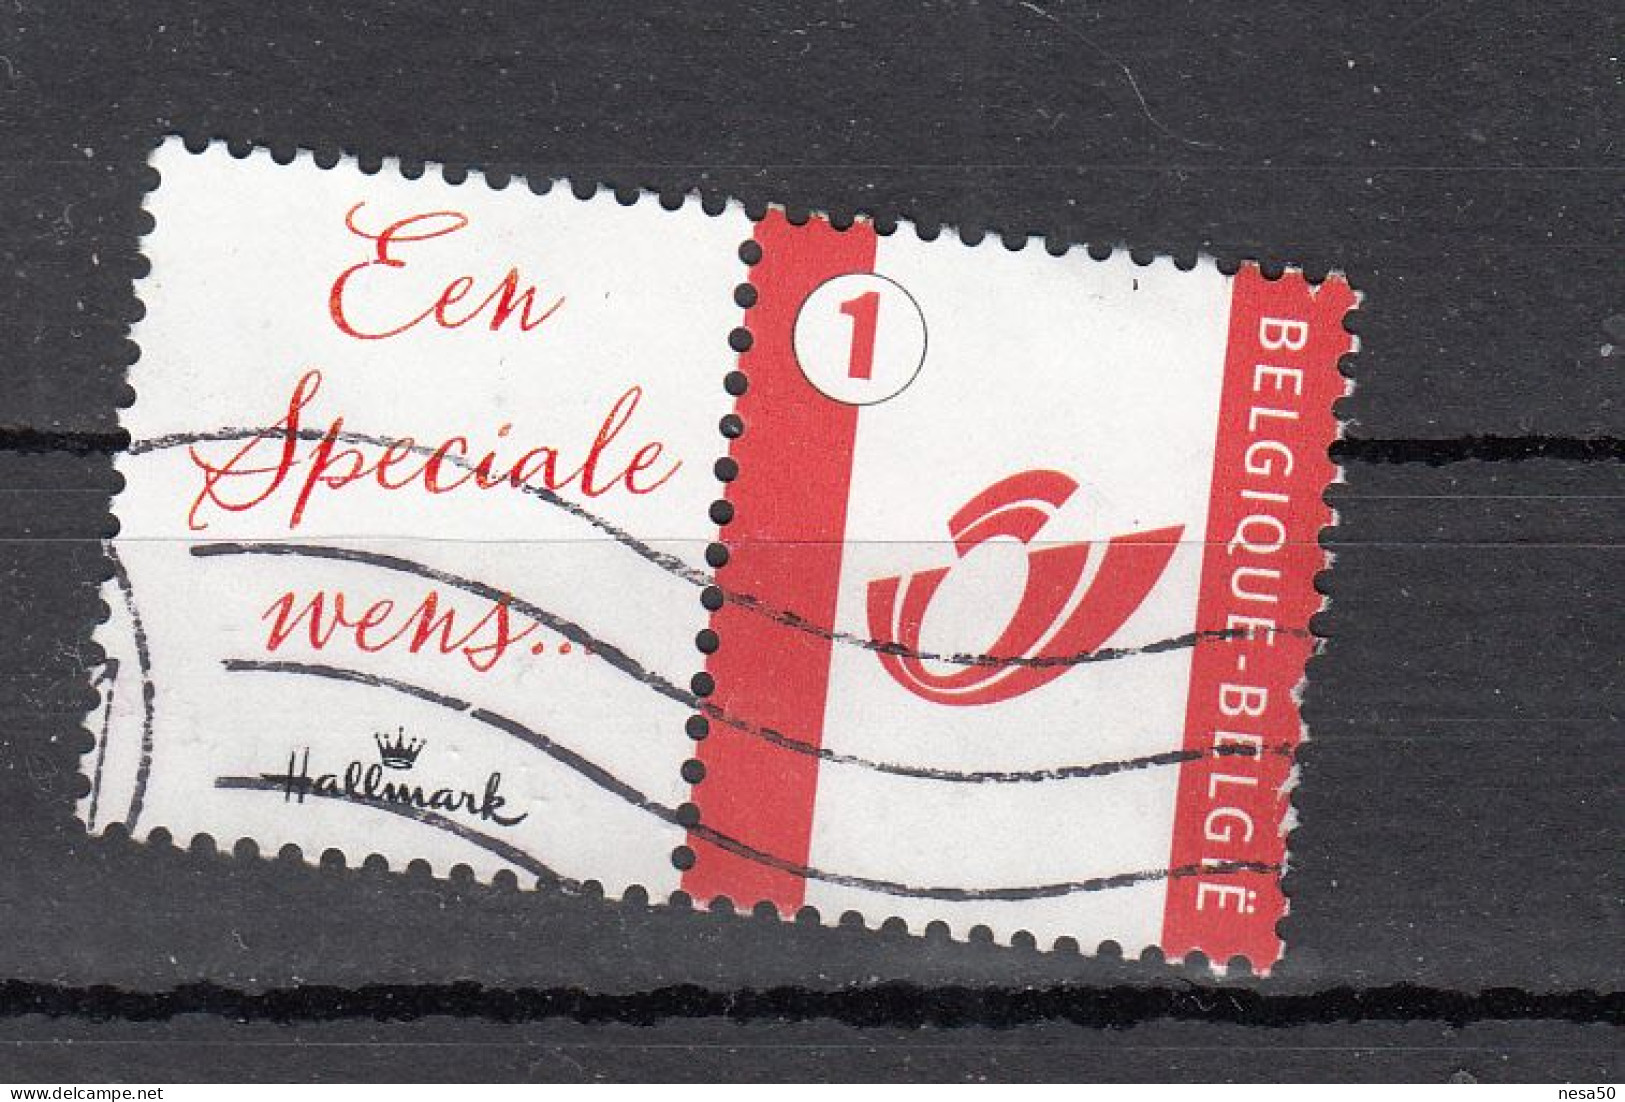 Belgie 2007 Mi Nr 3748, Persoonlijke, Hallmark: Een Speciale Wens -1 - Usati